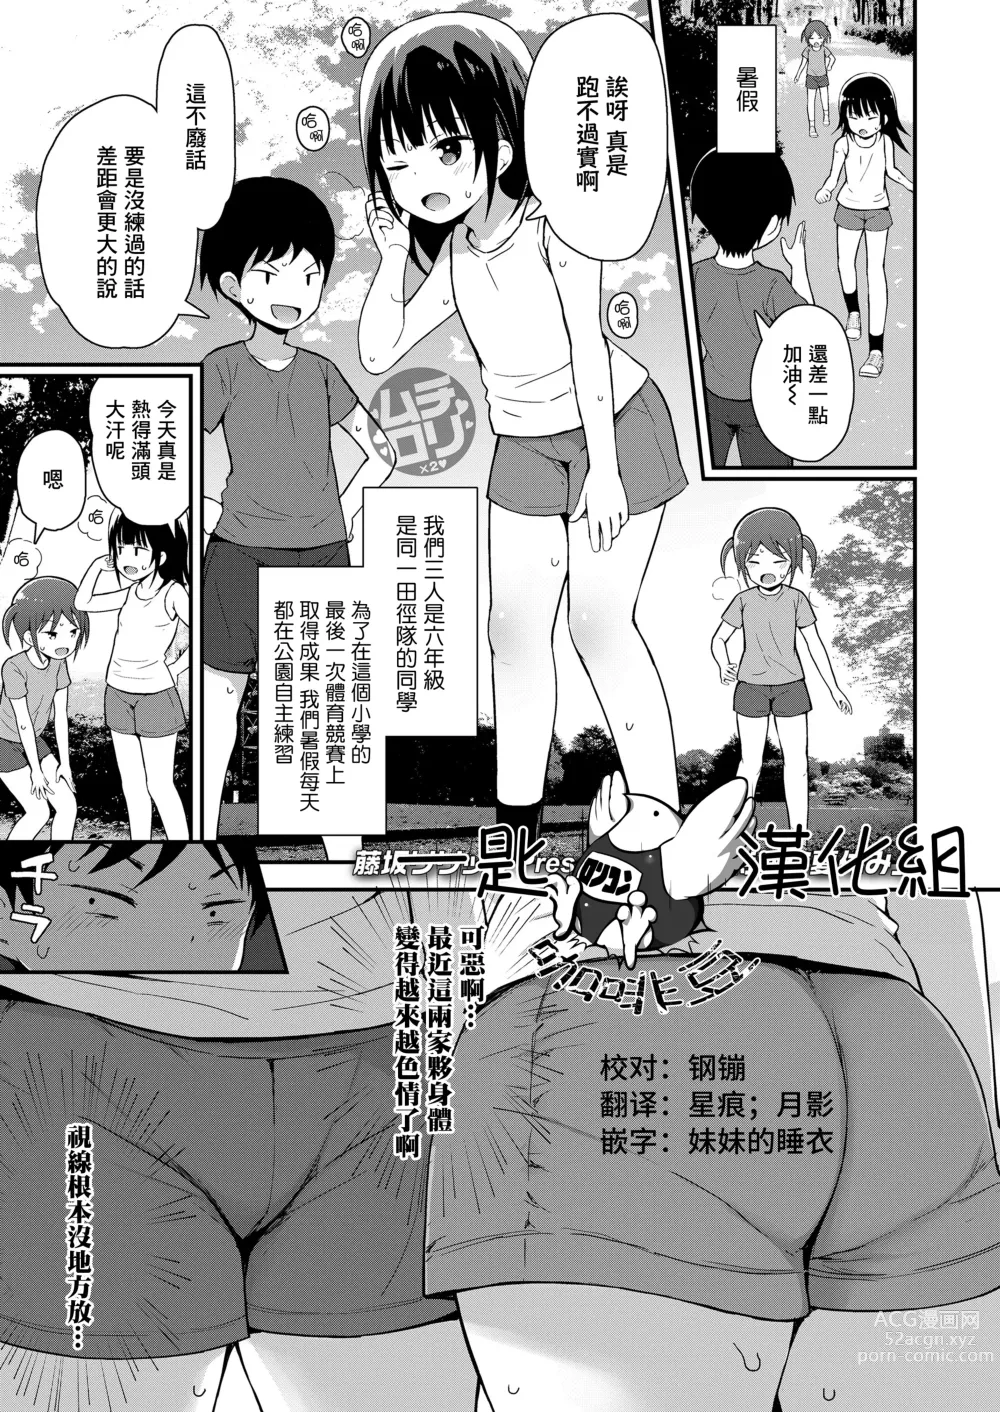 Page 1 of manga 3-nin no Tokubetsu na Natsuyasumi